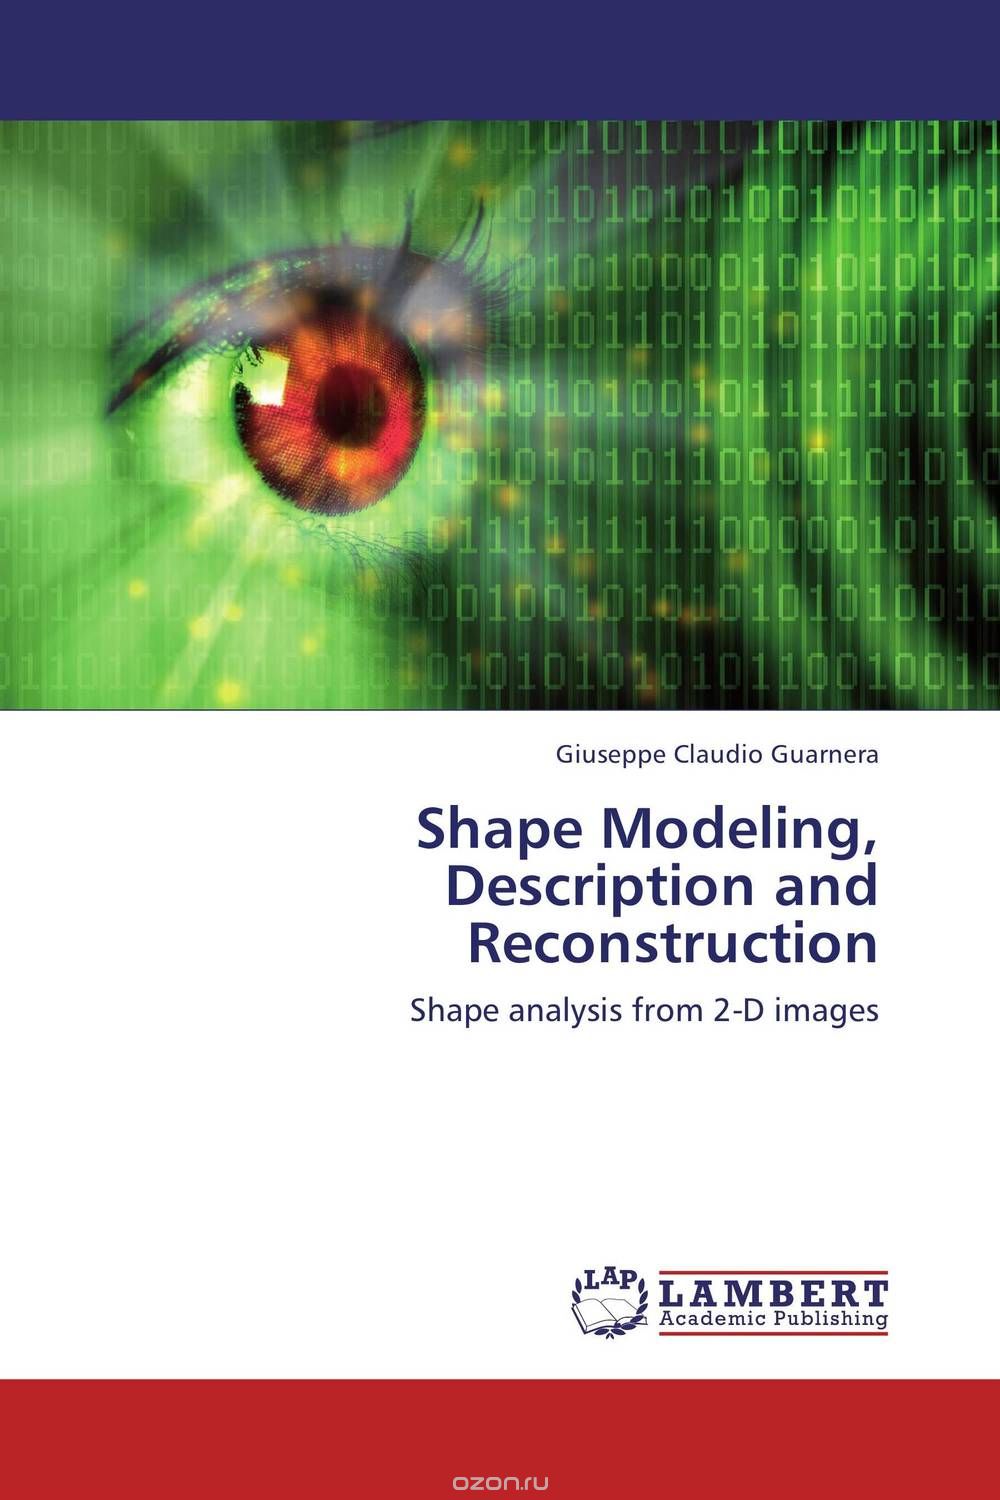 Скачать книгу "Shape Modeling, Description and Reconstruction"